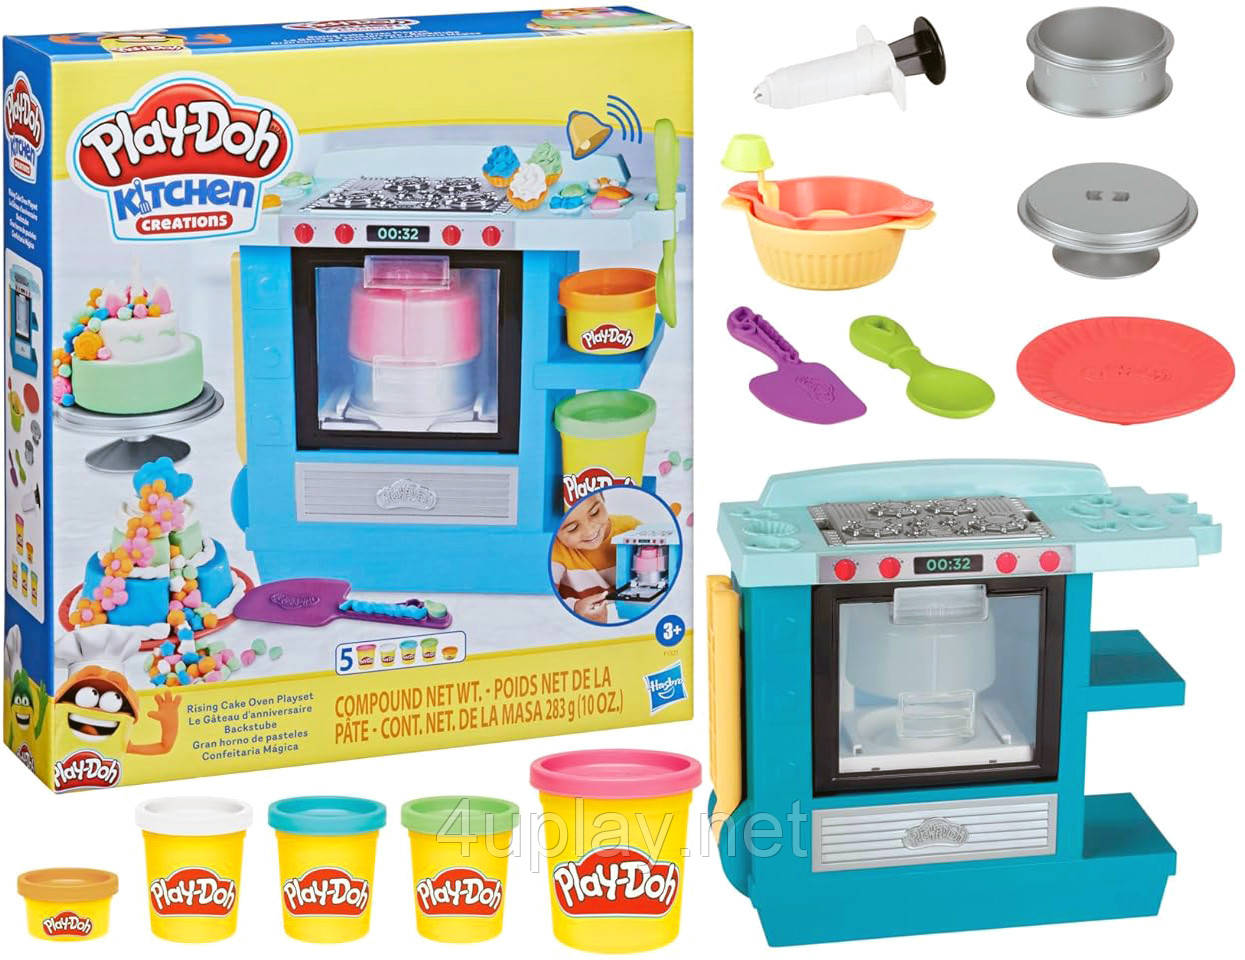 Ігровий набір Плей До для ліплення тісто Духовка для випічки Оригінал Play-Doh Kitchen Creations Rising Cake Oven